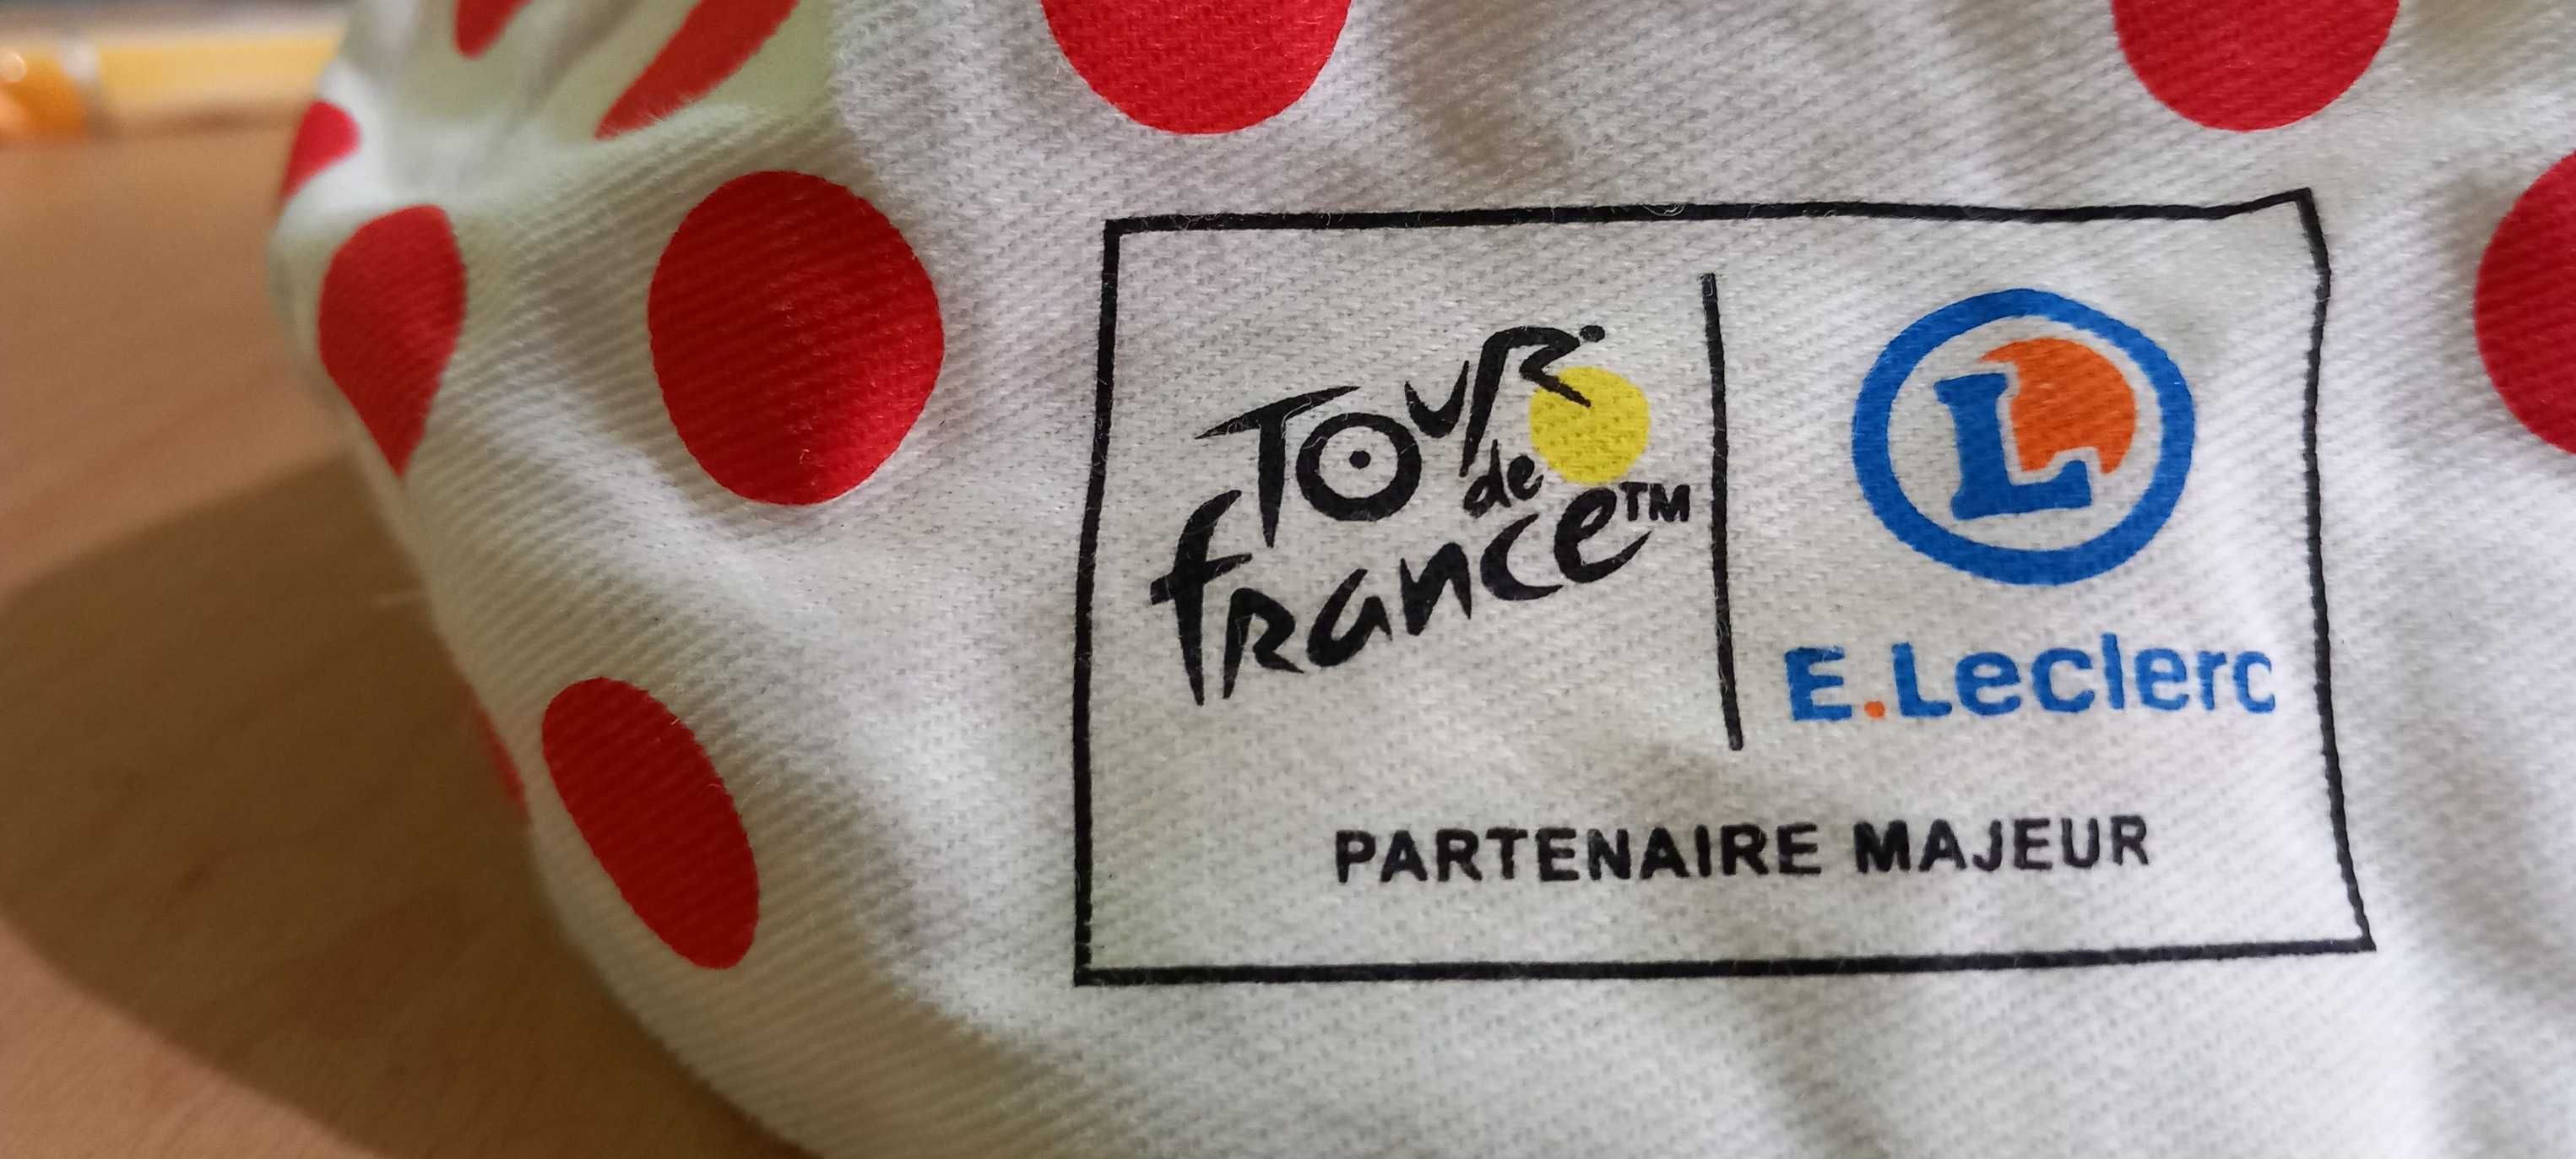 Шапка за колоездене от обиколката на Франция.Tour de France!Ръкавици.